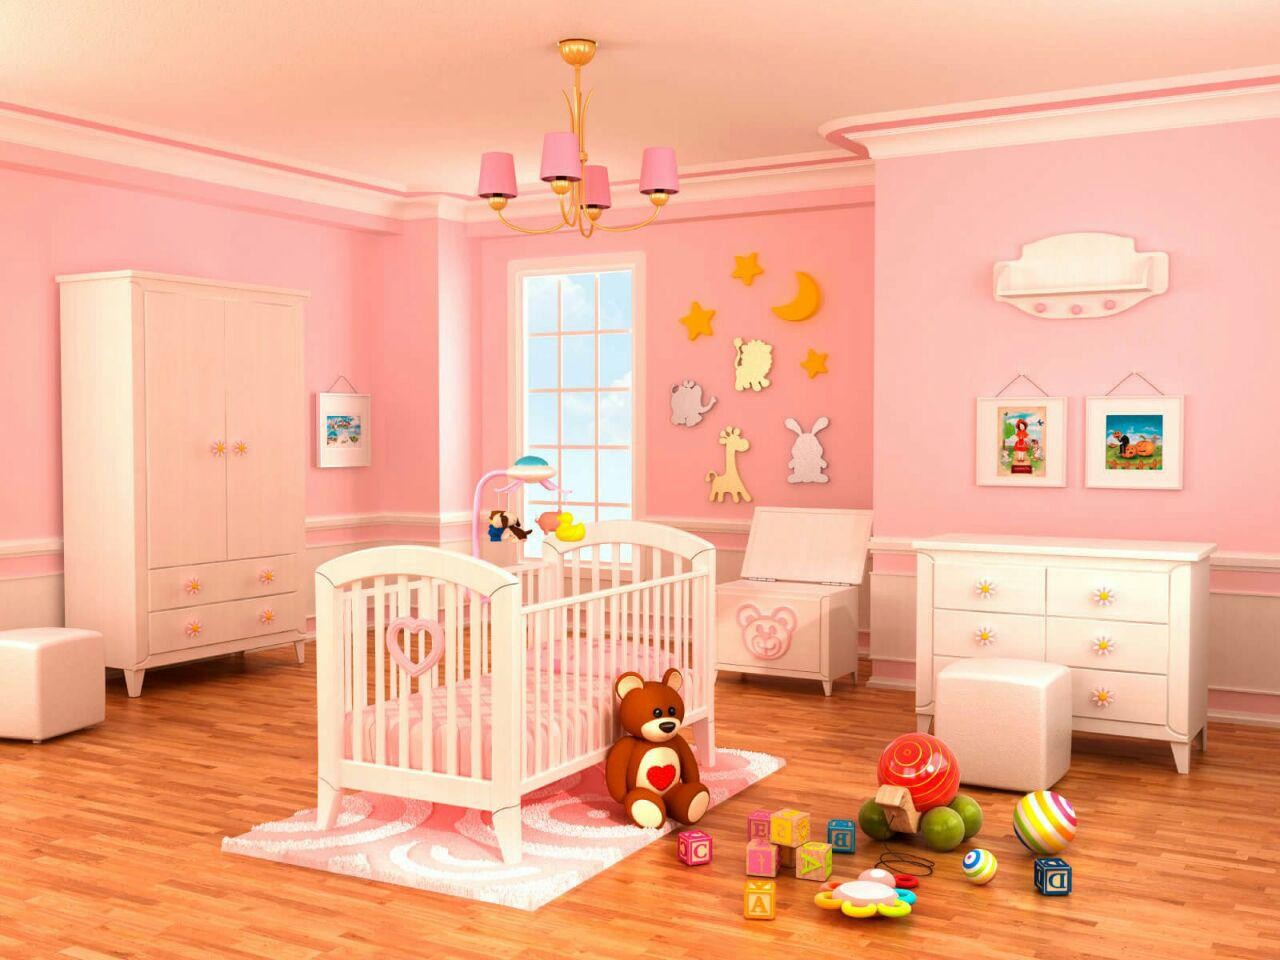 بررسی رنگ اتاق خواب کودک از نظر روانشناسی